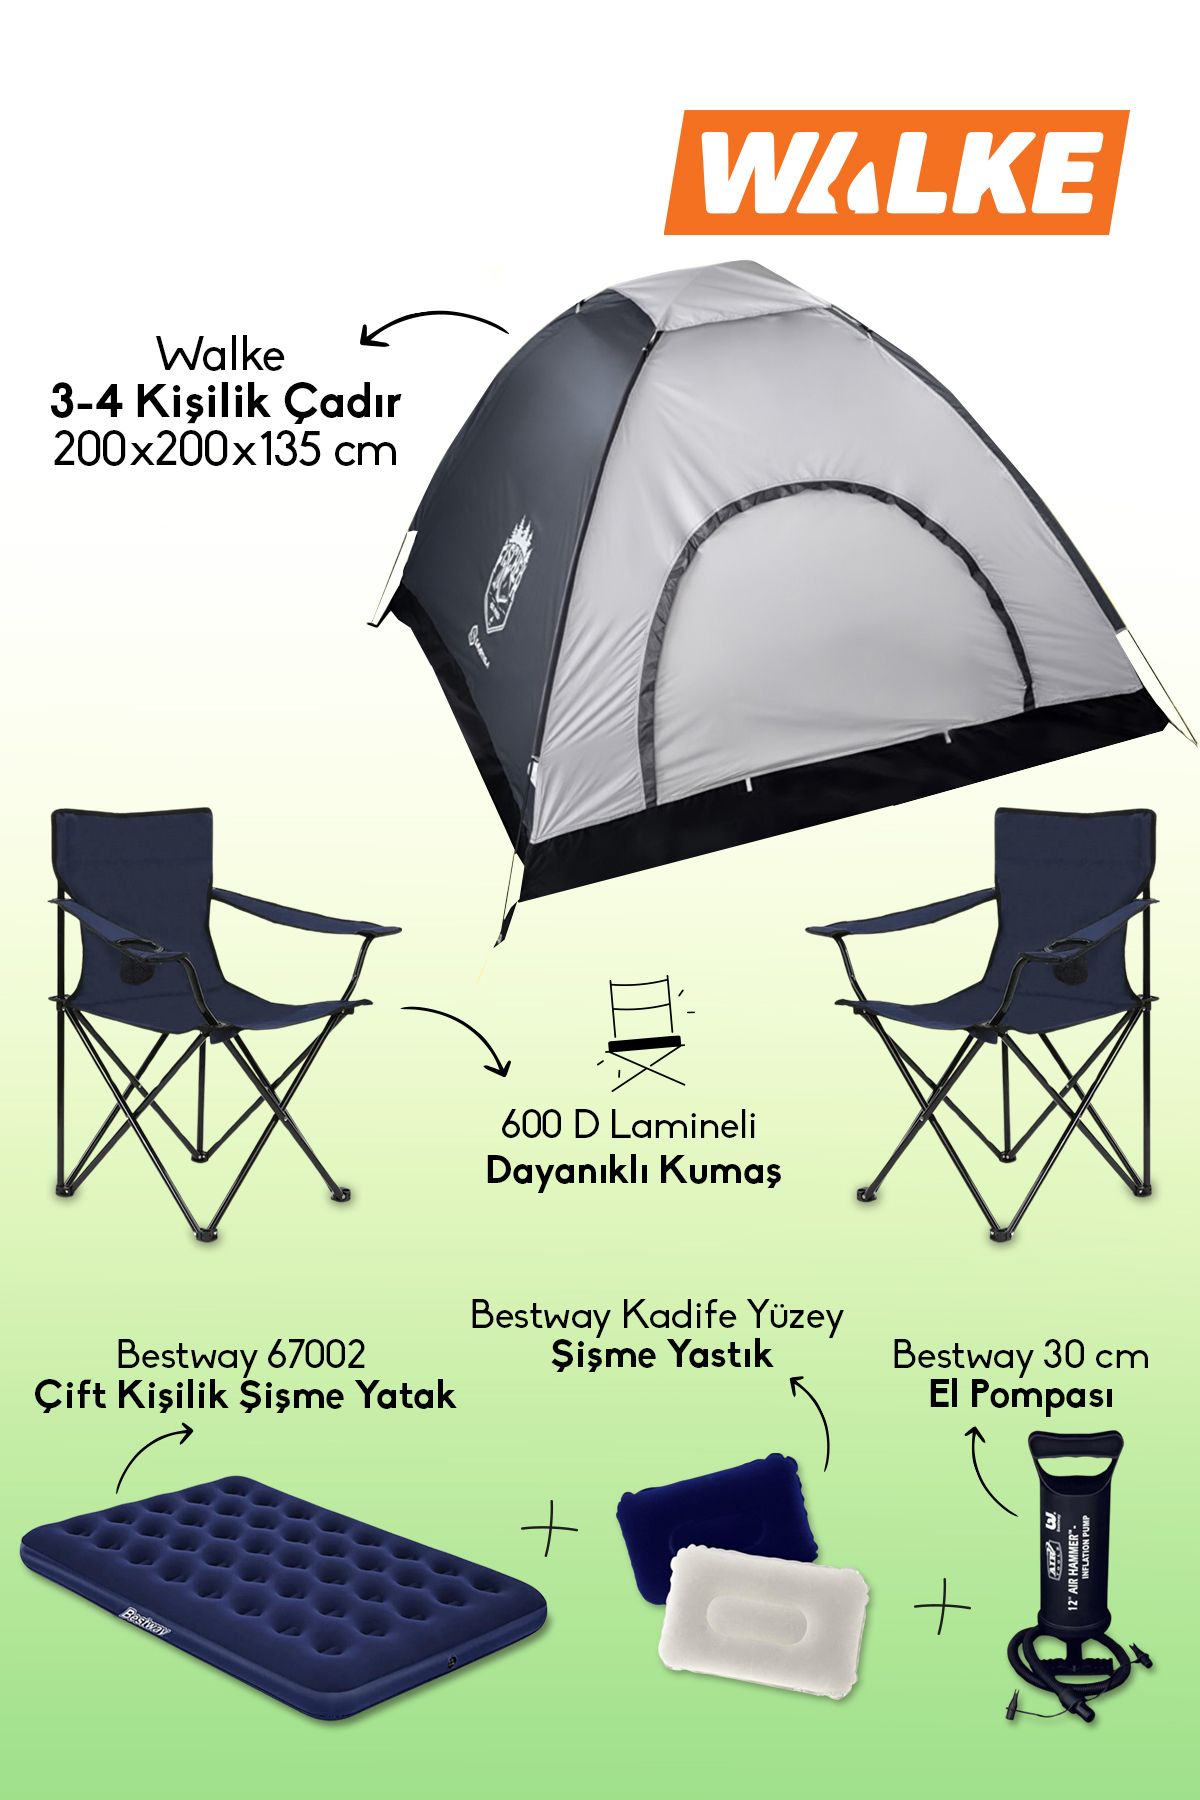 Walke Lüks Kamp Seti 4 Kişilik Çadır Çift Kişilik Yatak 2 Adet Lacivert Sandalye 2 Yastık Pompa